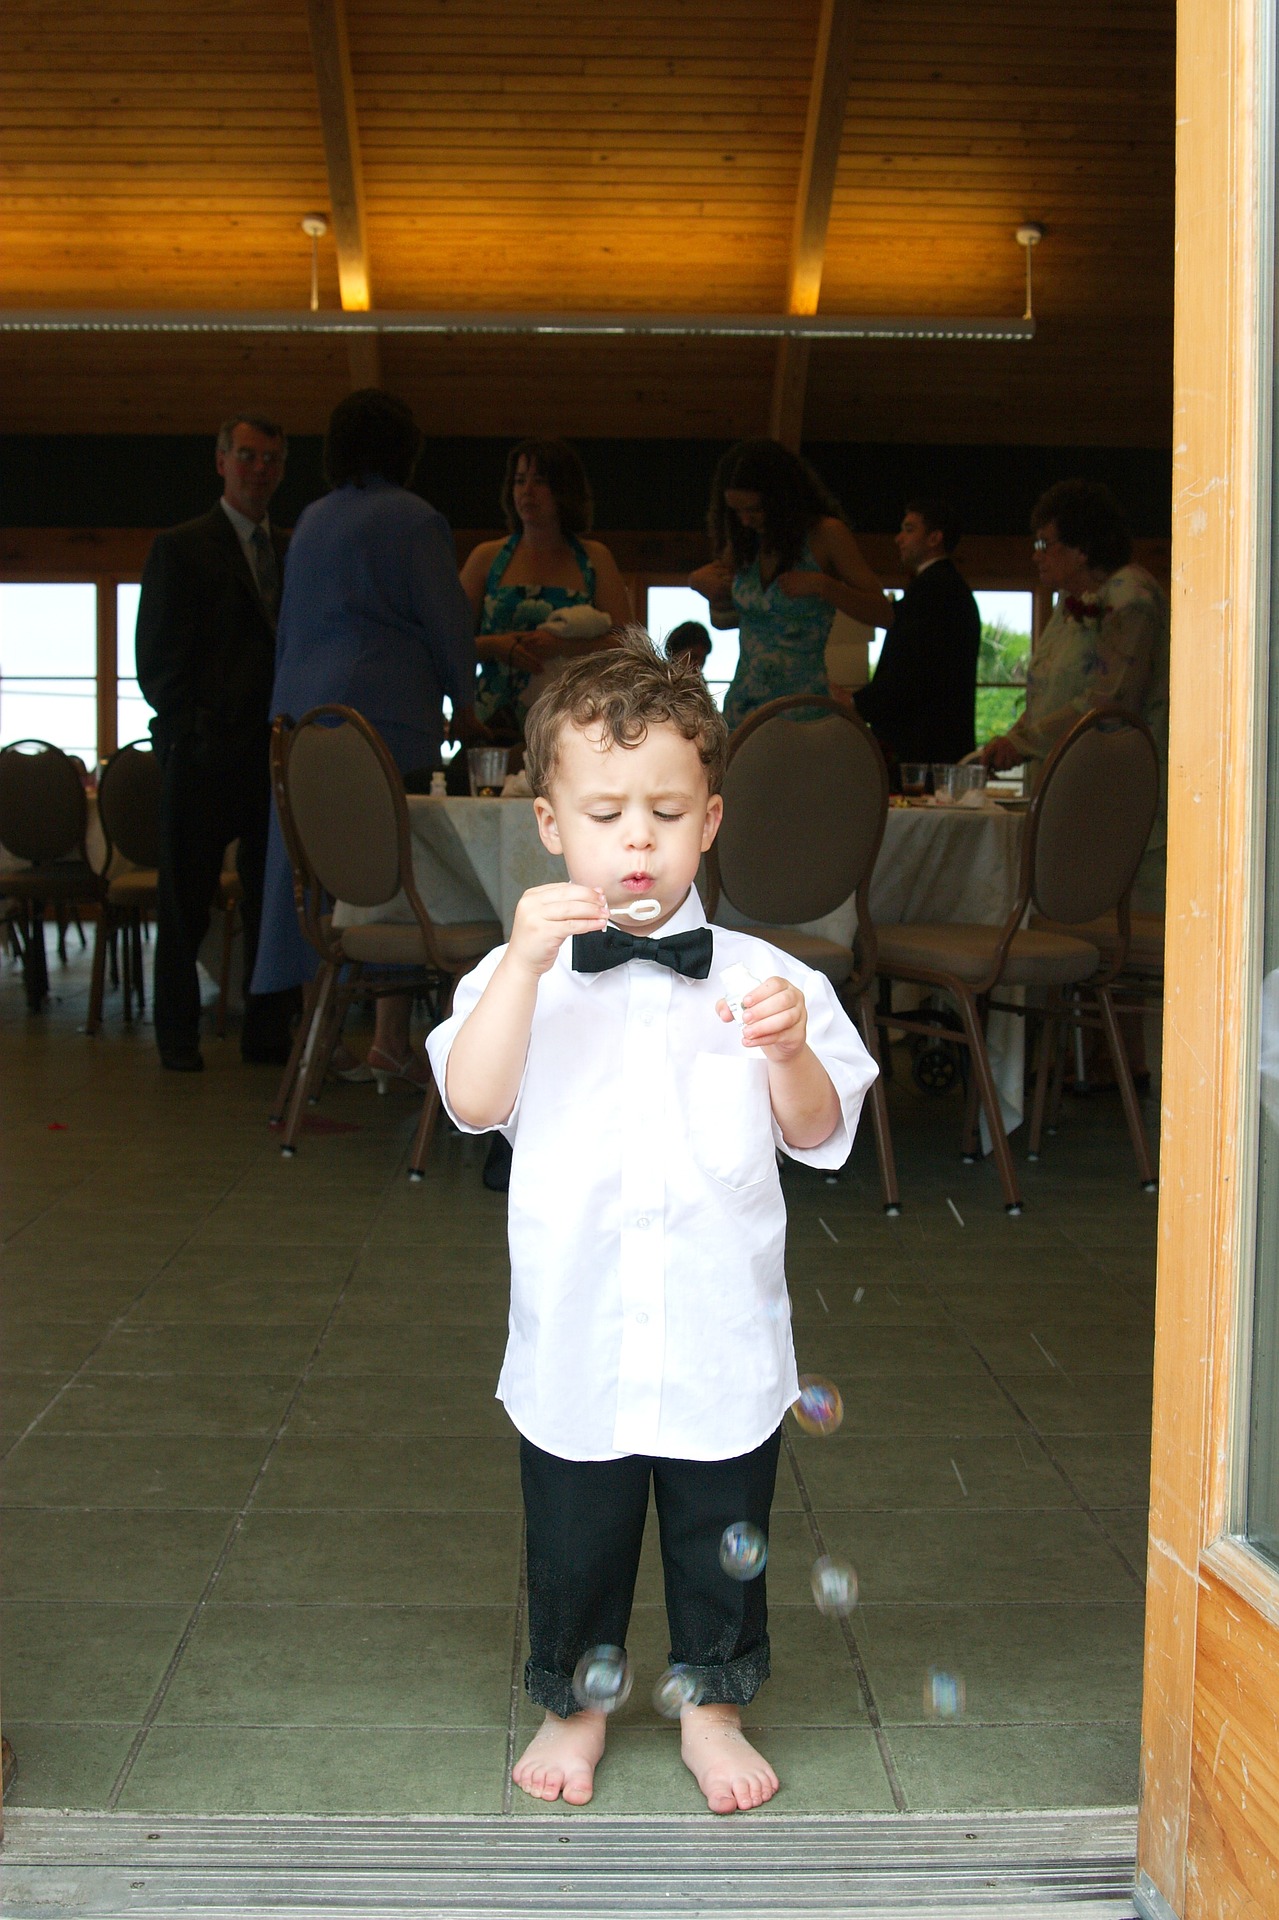 chłopczyk puszczający na ślubie bańki mydlane